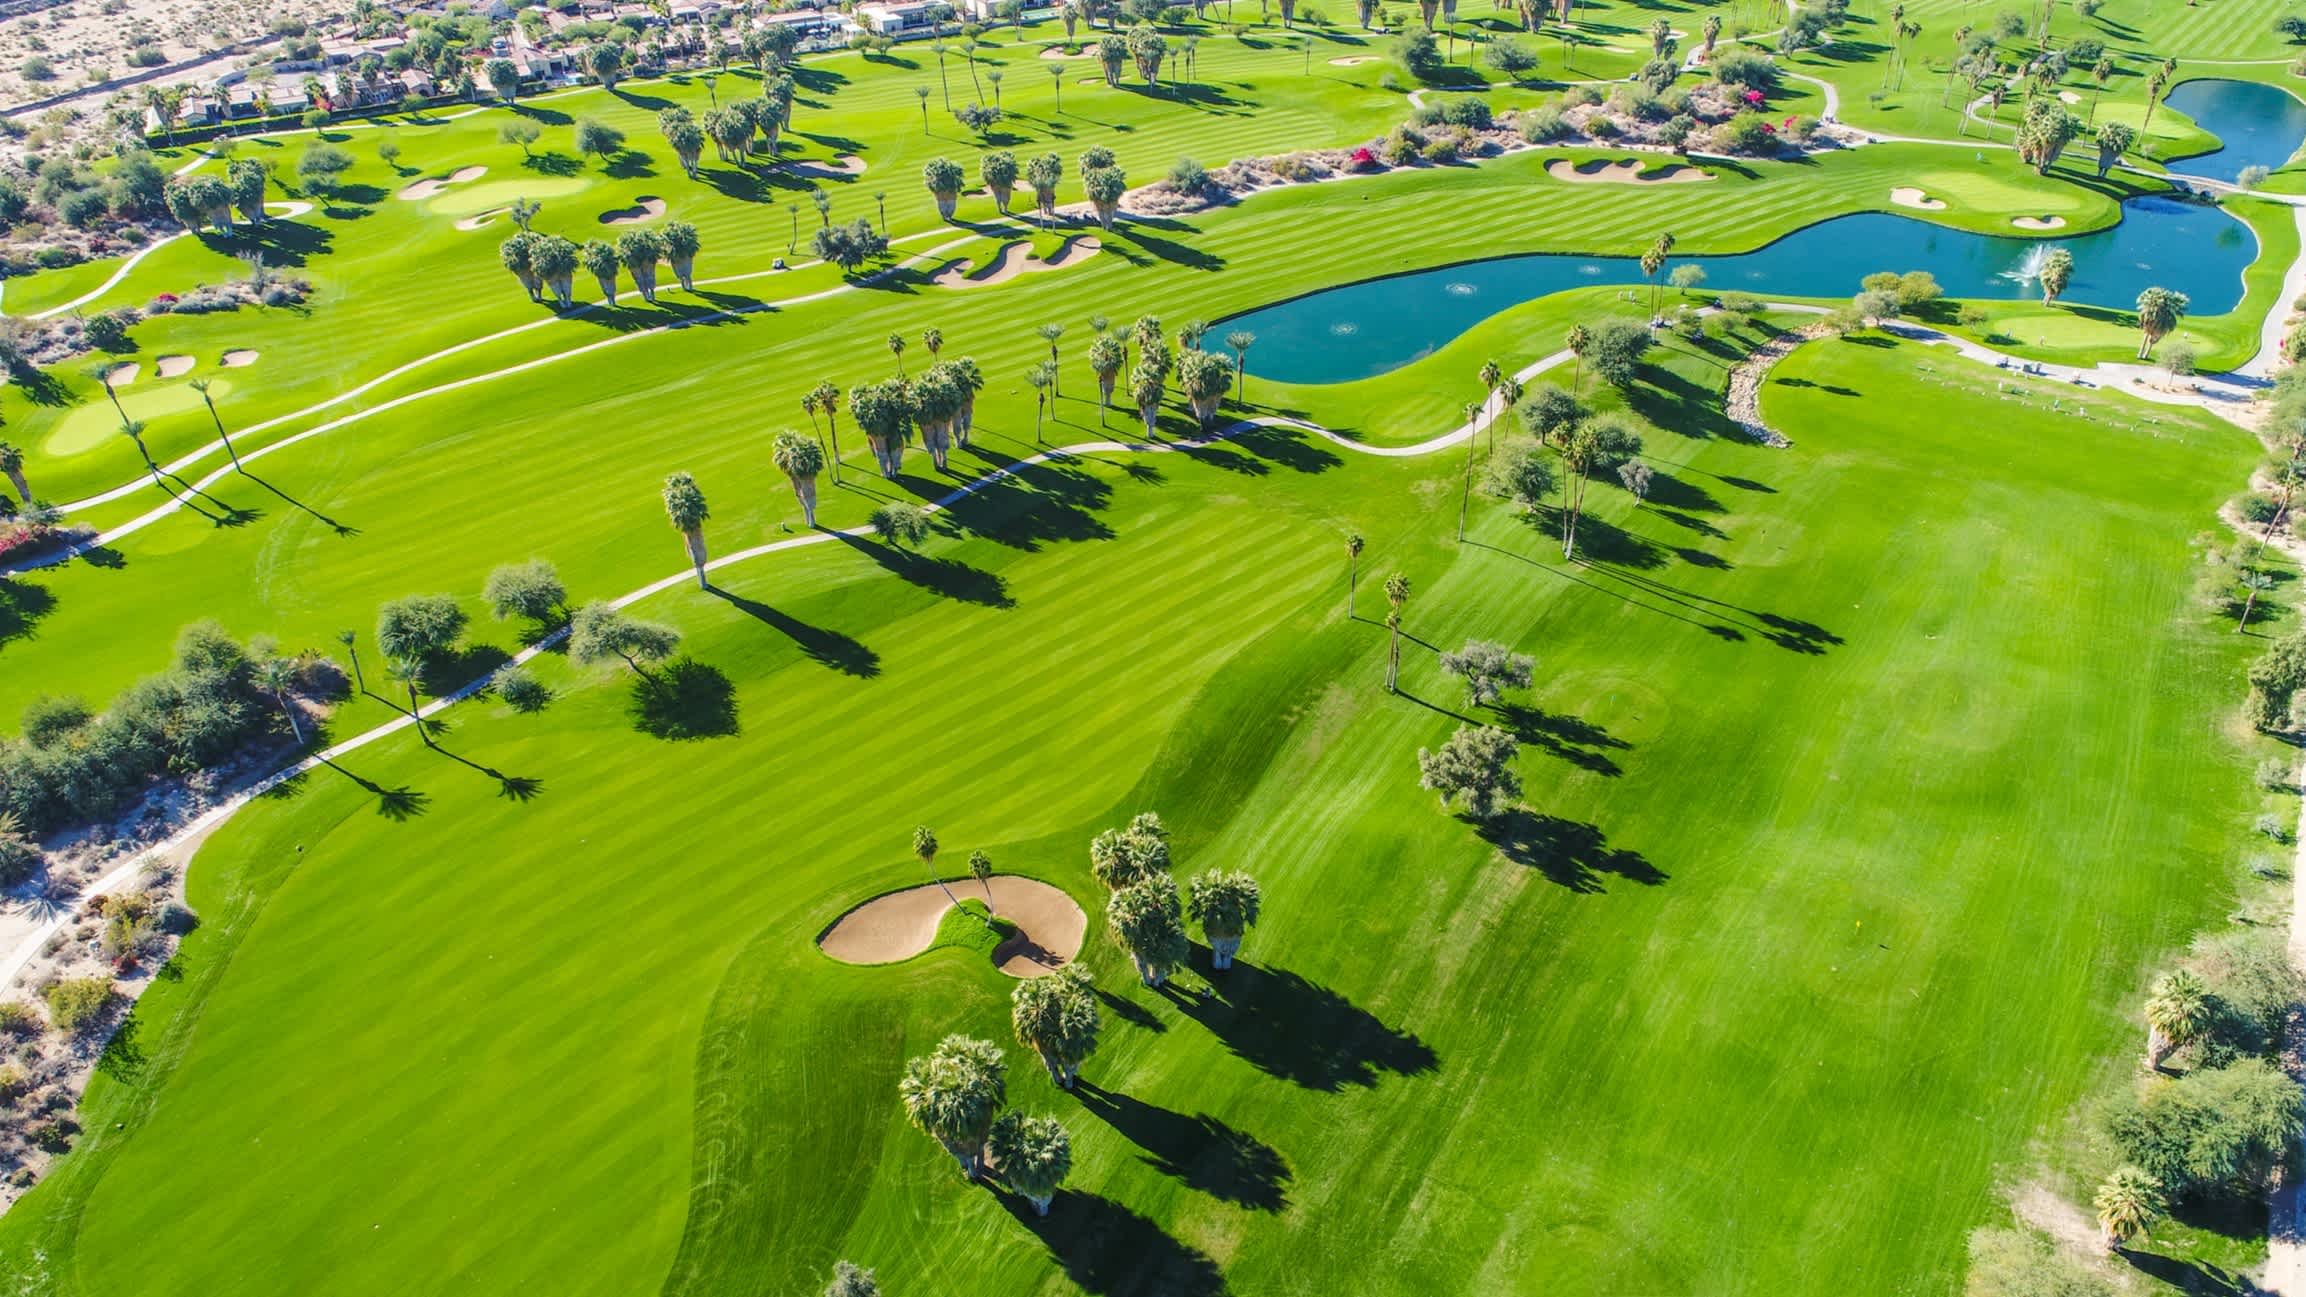 Image de drone du terrain de golf